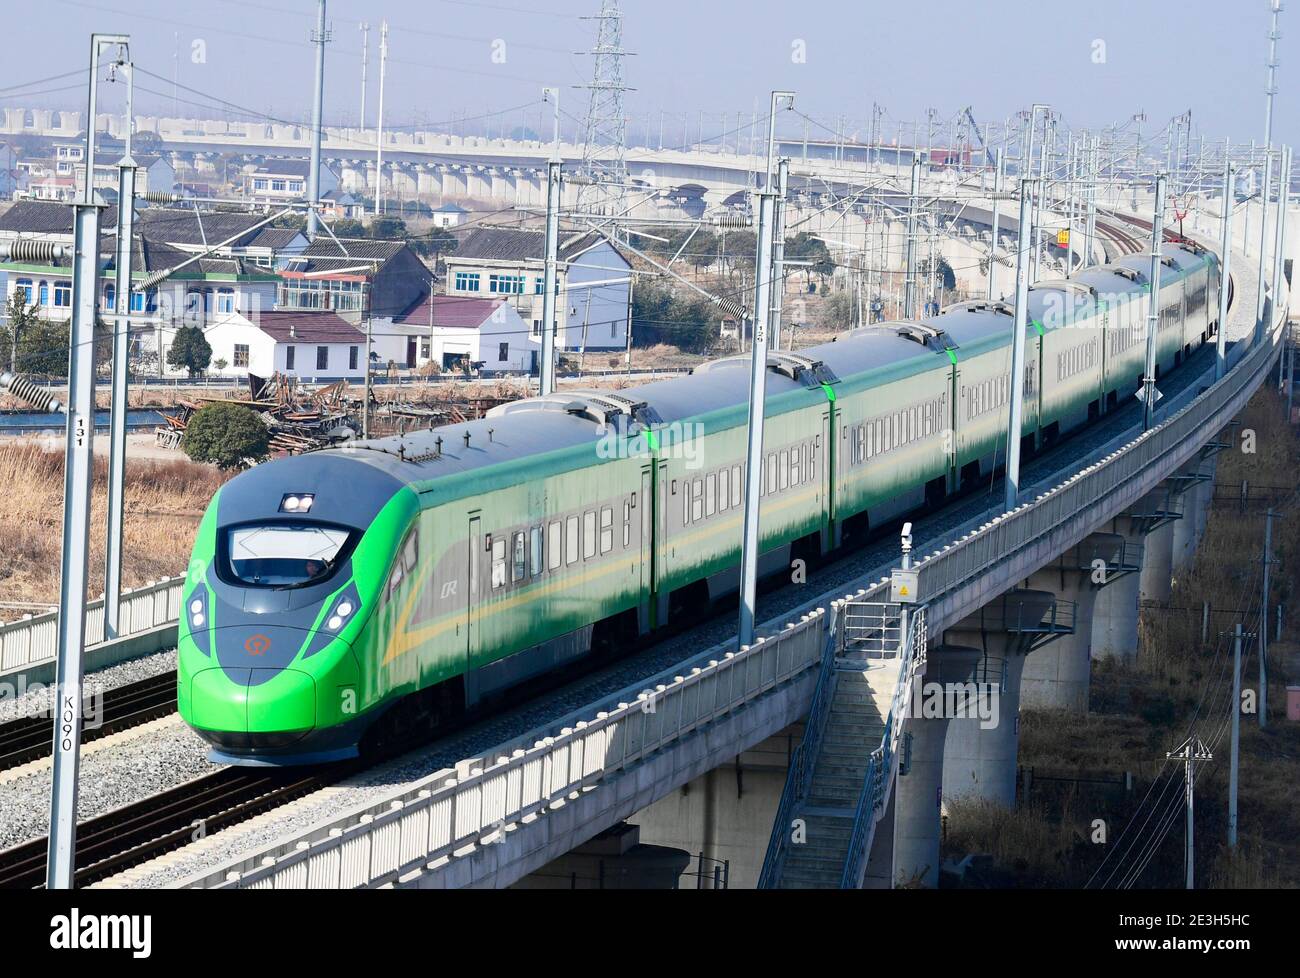 (210119) -- SUZHOU, 19 de enero de 2021 (Xinhua) -- UN tren pasa por el municipio de Huangjing de Taicang, al este de la provincia de Jiangsu, 19 de enero de 2021. China implementará un nuevo plan operativo ferroviario a partir del 20 de enero de 2021, para mejorar aún más la capacidad de transporte ferroviario de pasajeros y carga del país, según el operador ferroviario nacional. Un total de 325 trenes de pasajeros, así como 114 trenes de carga para las principales líneas de transporte de carga, se añadirán en el nuevo plan, dijo el Grupo ferroviario del Estado de China Co., Ltd. (Foto de Ji Haixin/Xinhua) Foto de stock